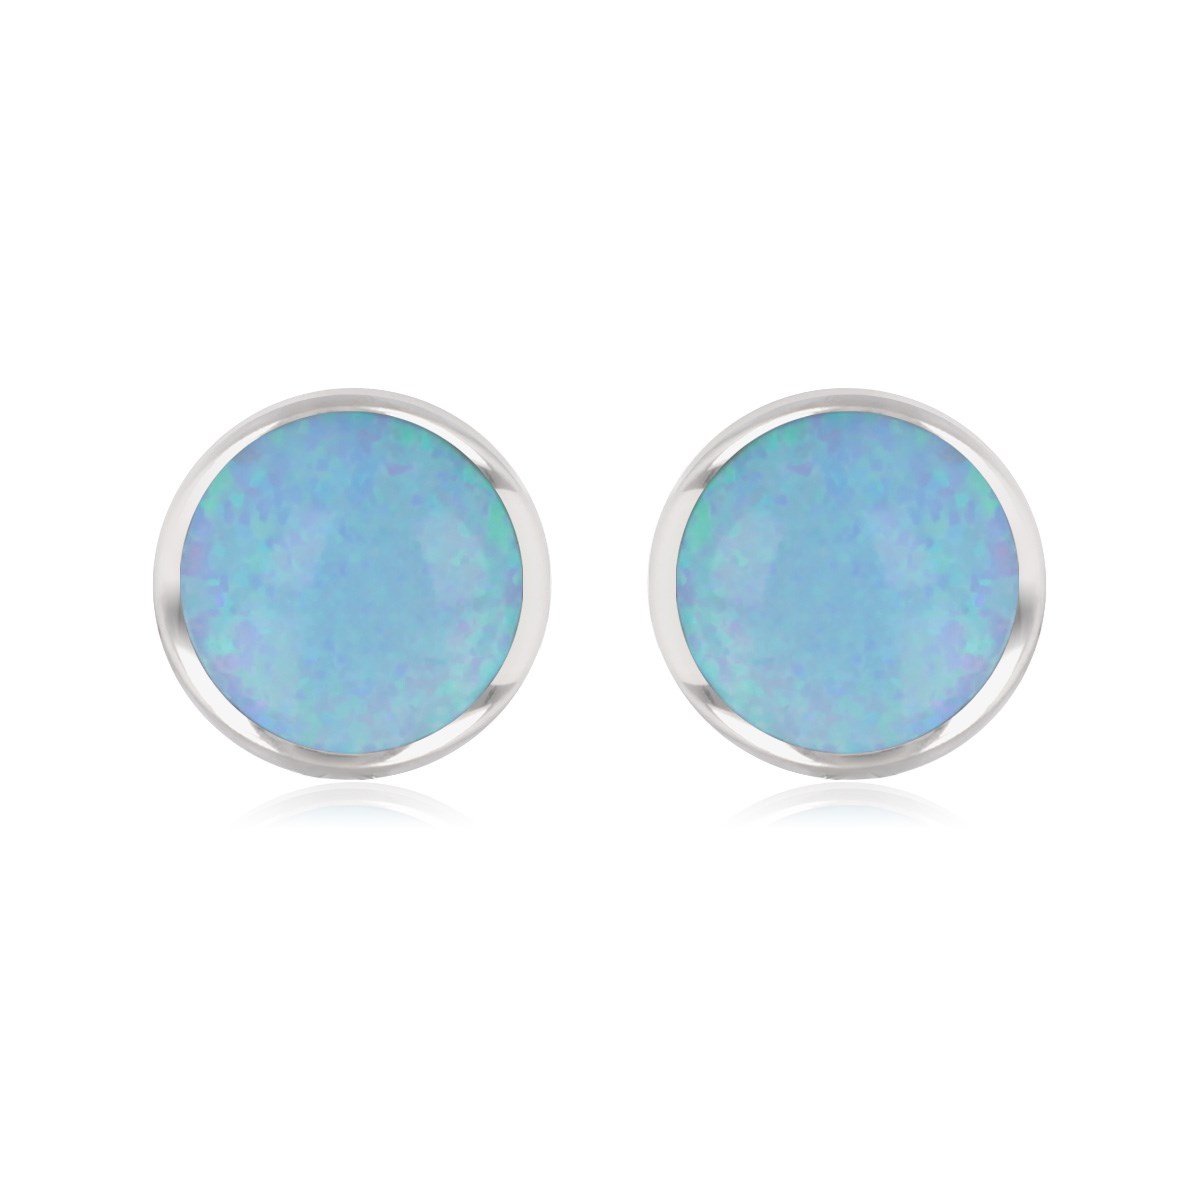 Boucles d'oreille argent rhodié opale bleue imitation forme ronde 7mm